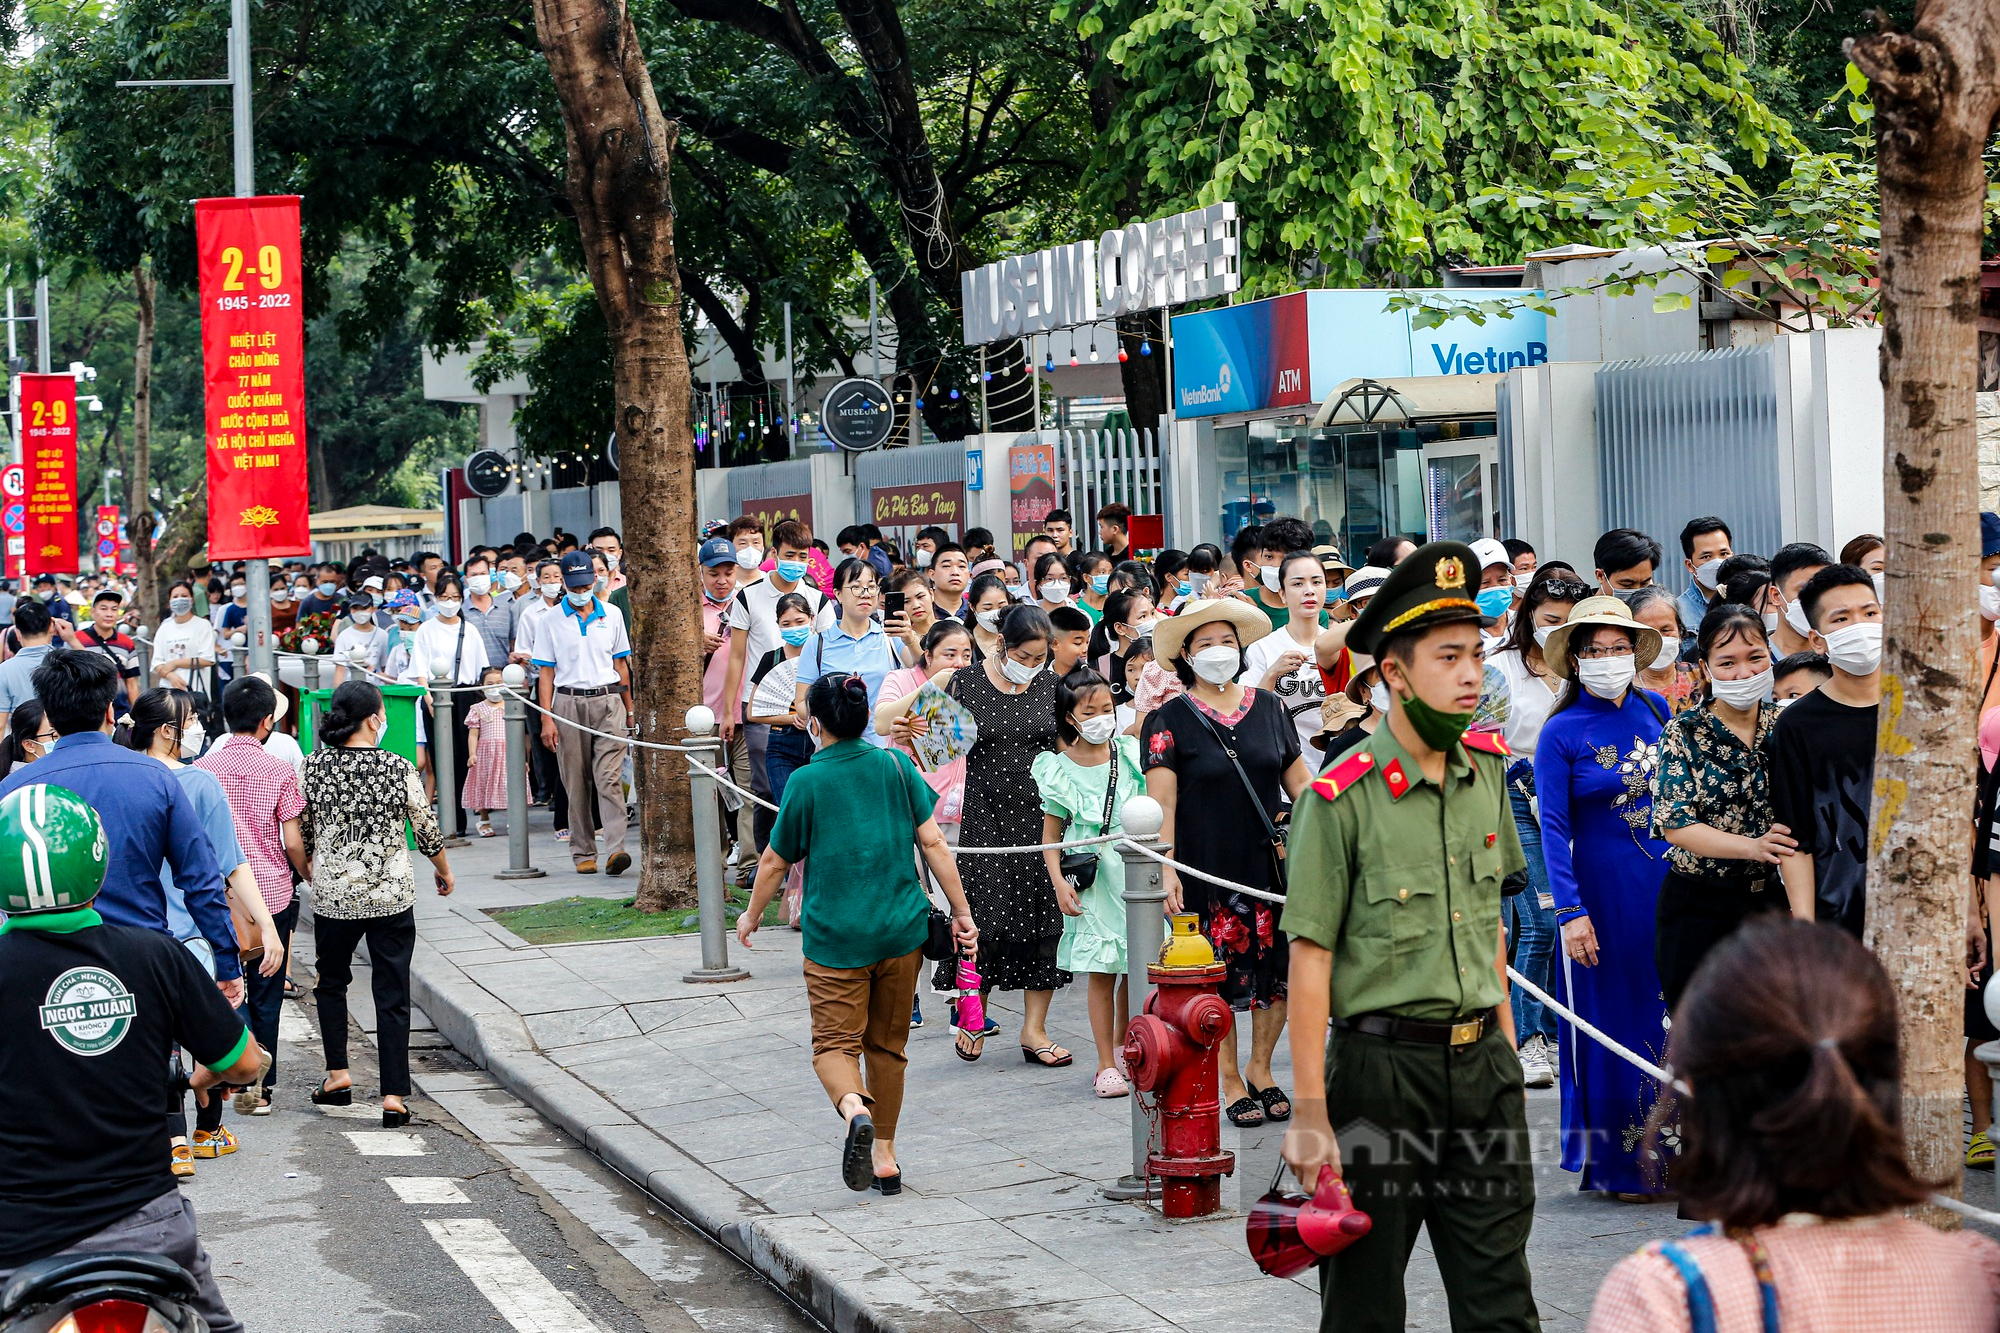 Hàng vạn người xếp hàng dài vào Lăng viếng Chủ tịch Hồ Chí Minh ngày Quốc khánh 2/9 - Ảnh 1.